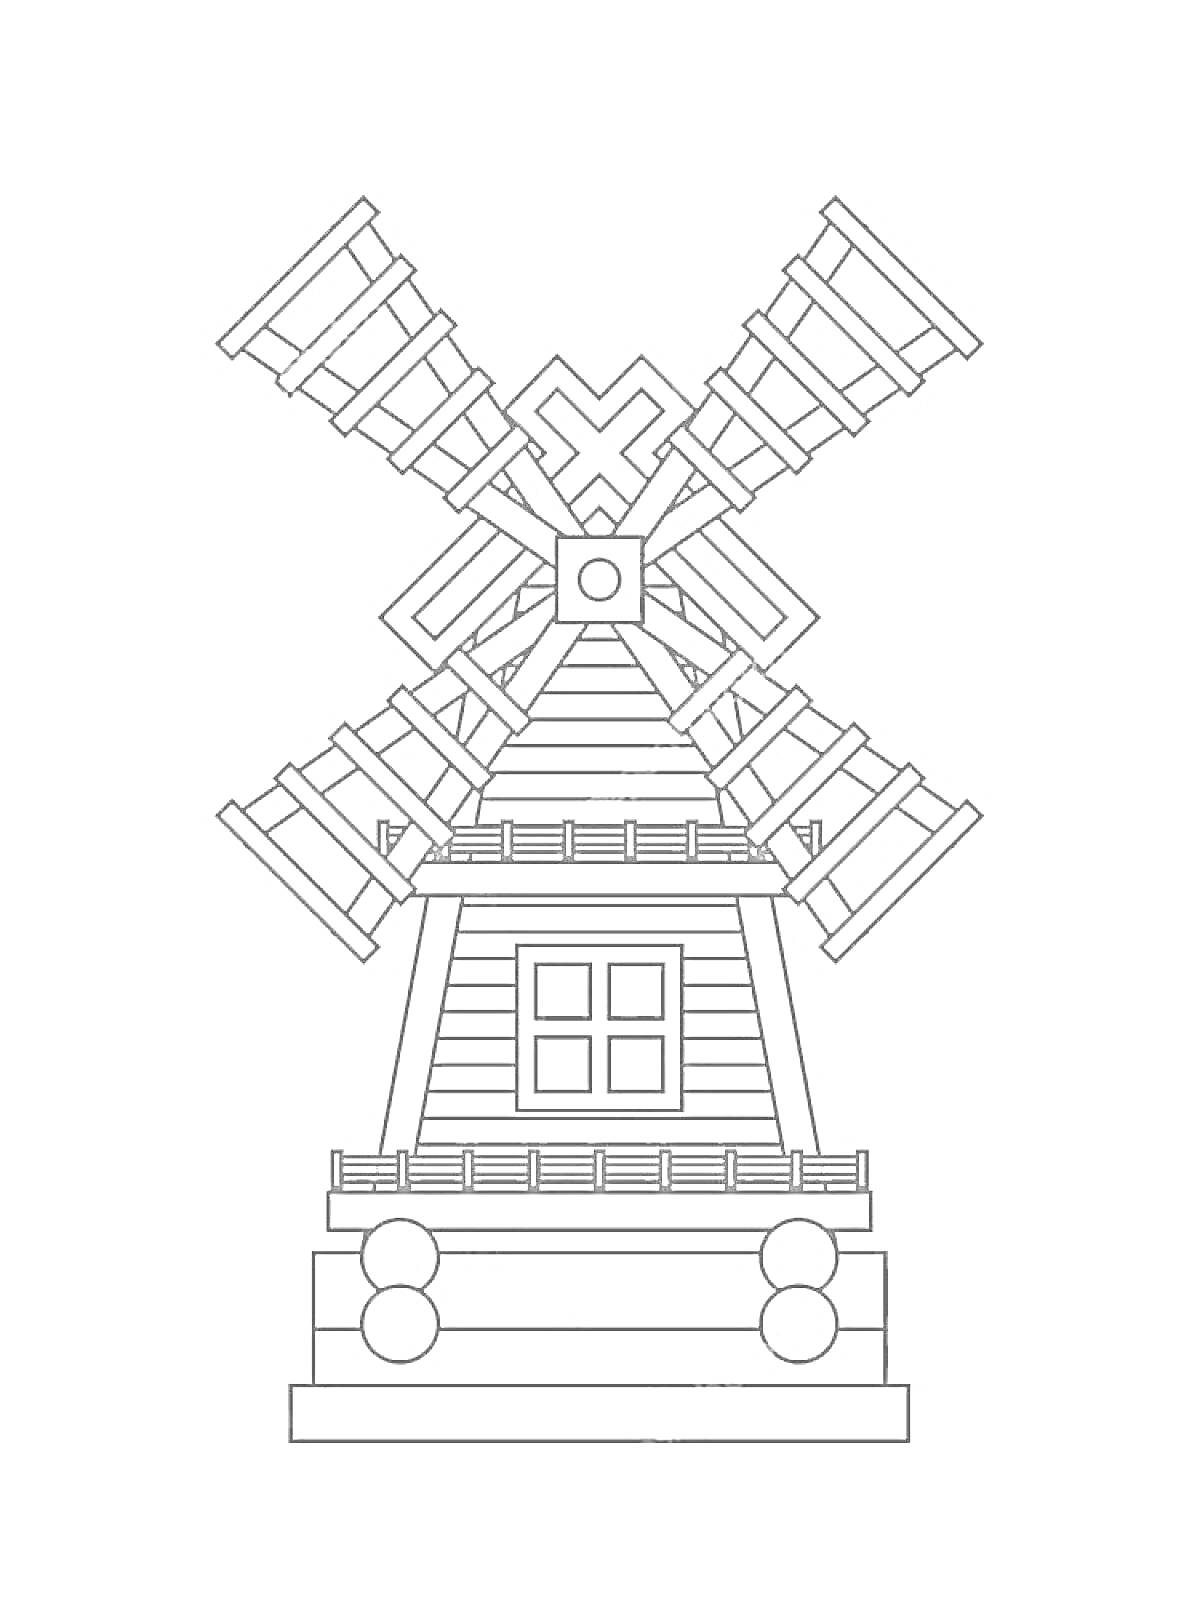 РаскраскаМельница с четырёхлопастным пропеллером, центральным окном и ступенчатой основой